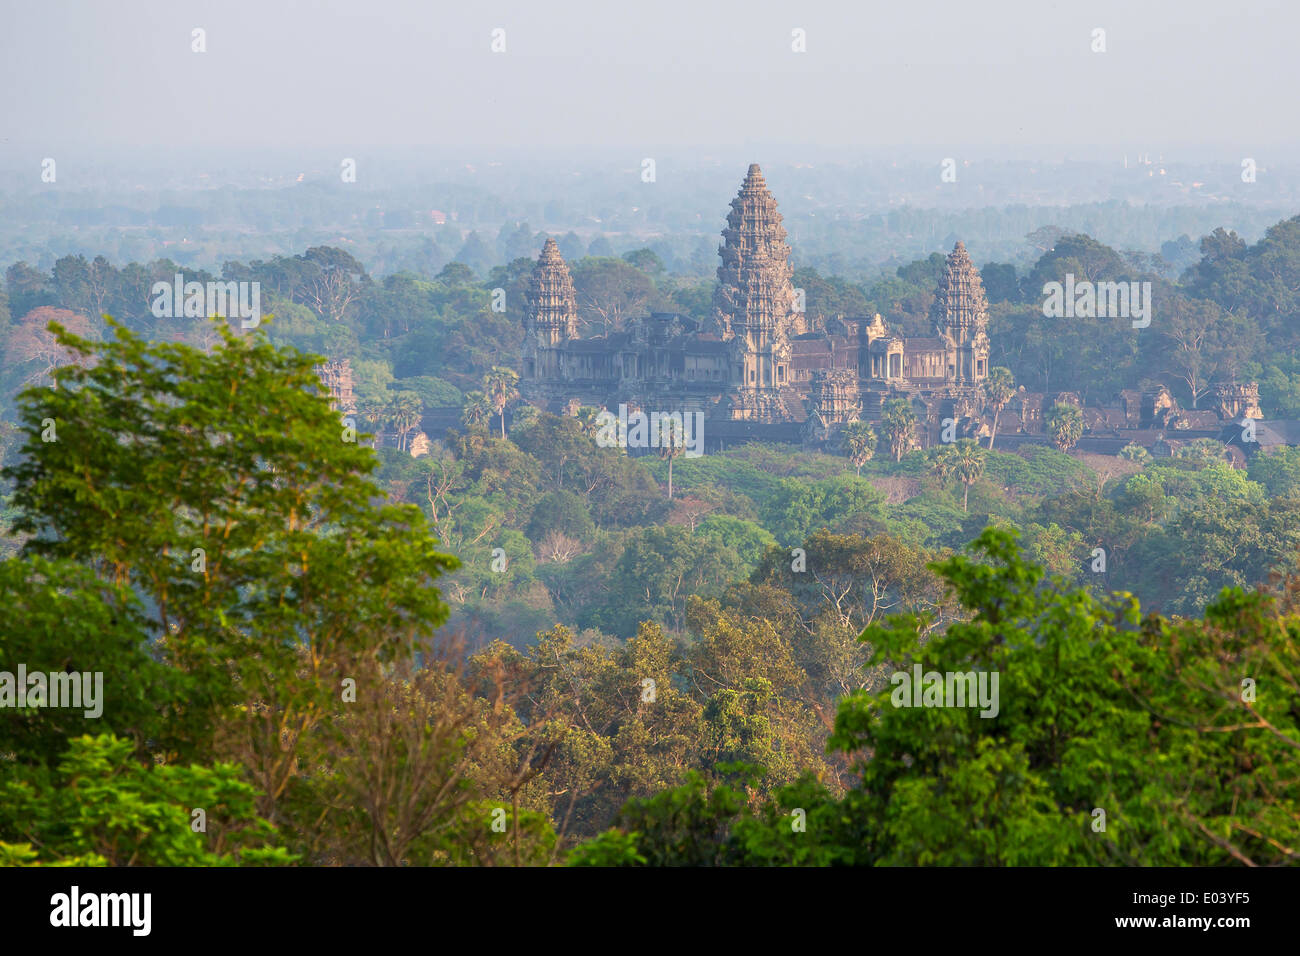 Tempel von Angkor Wat, Siem Reap, Kambodscha. Stockfoto